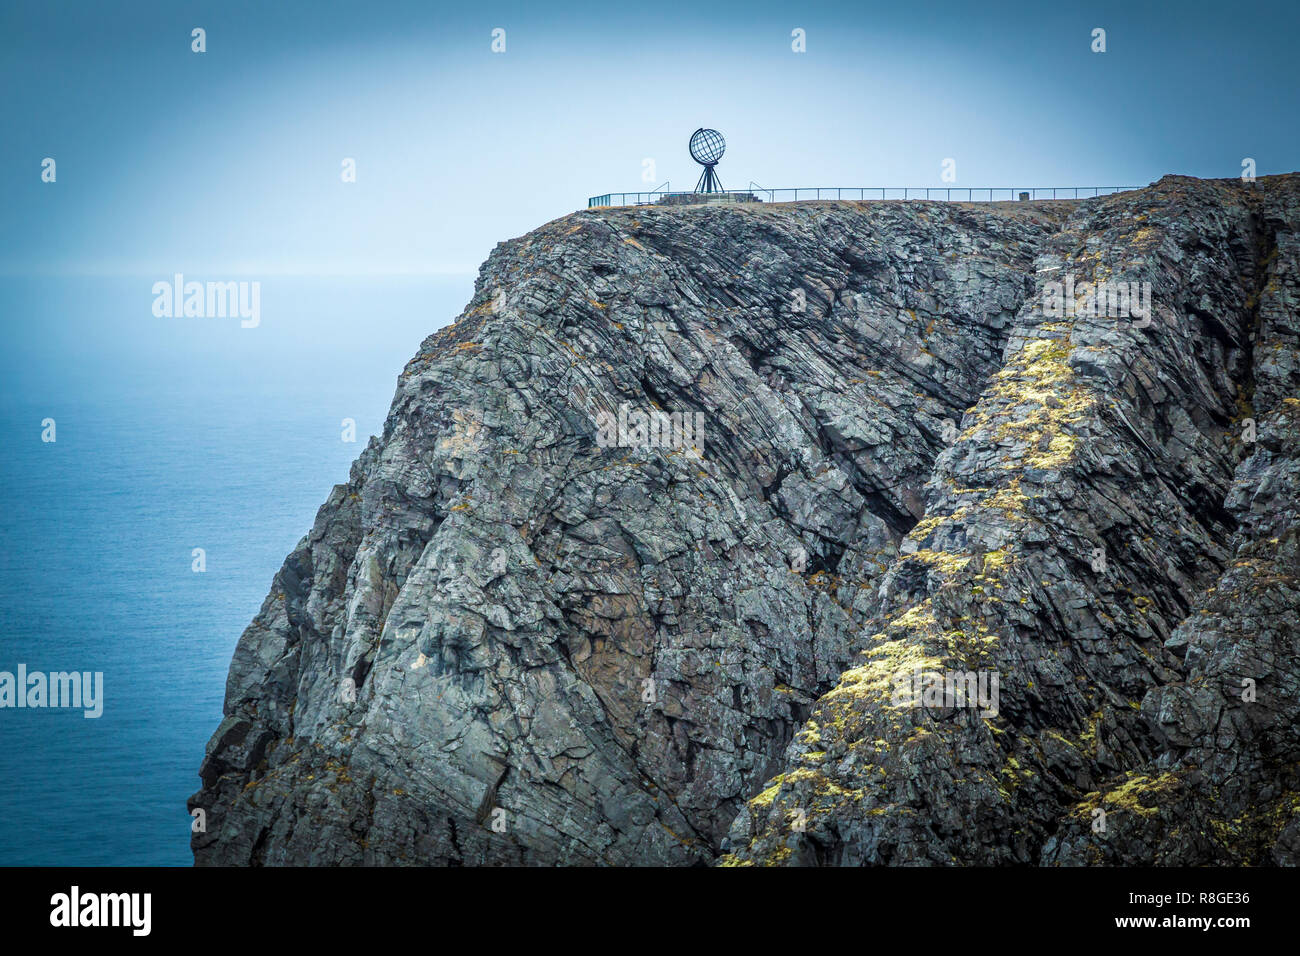 Nordkapp, der nördlichste Punkt von Europas Festland Stock Photo